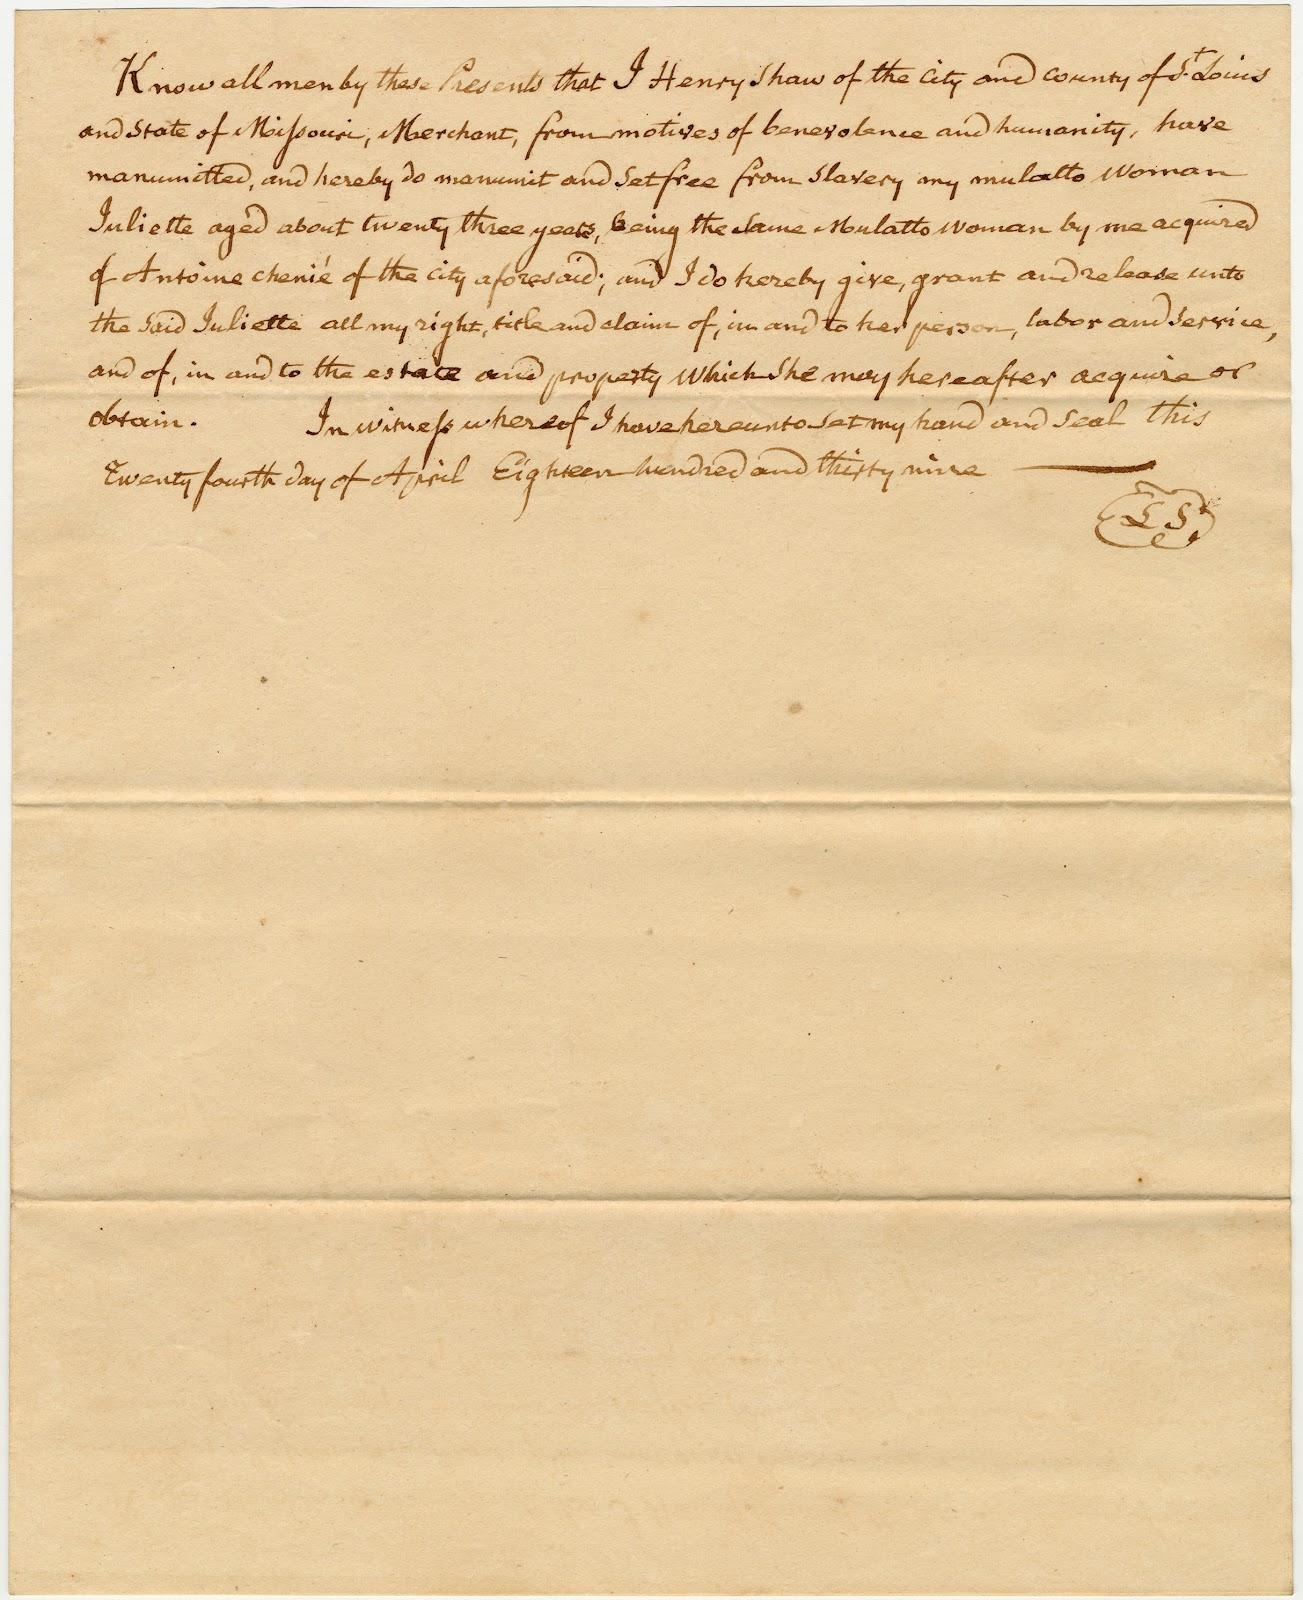 Shaw letter on Juliette freedom